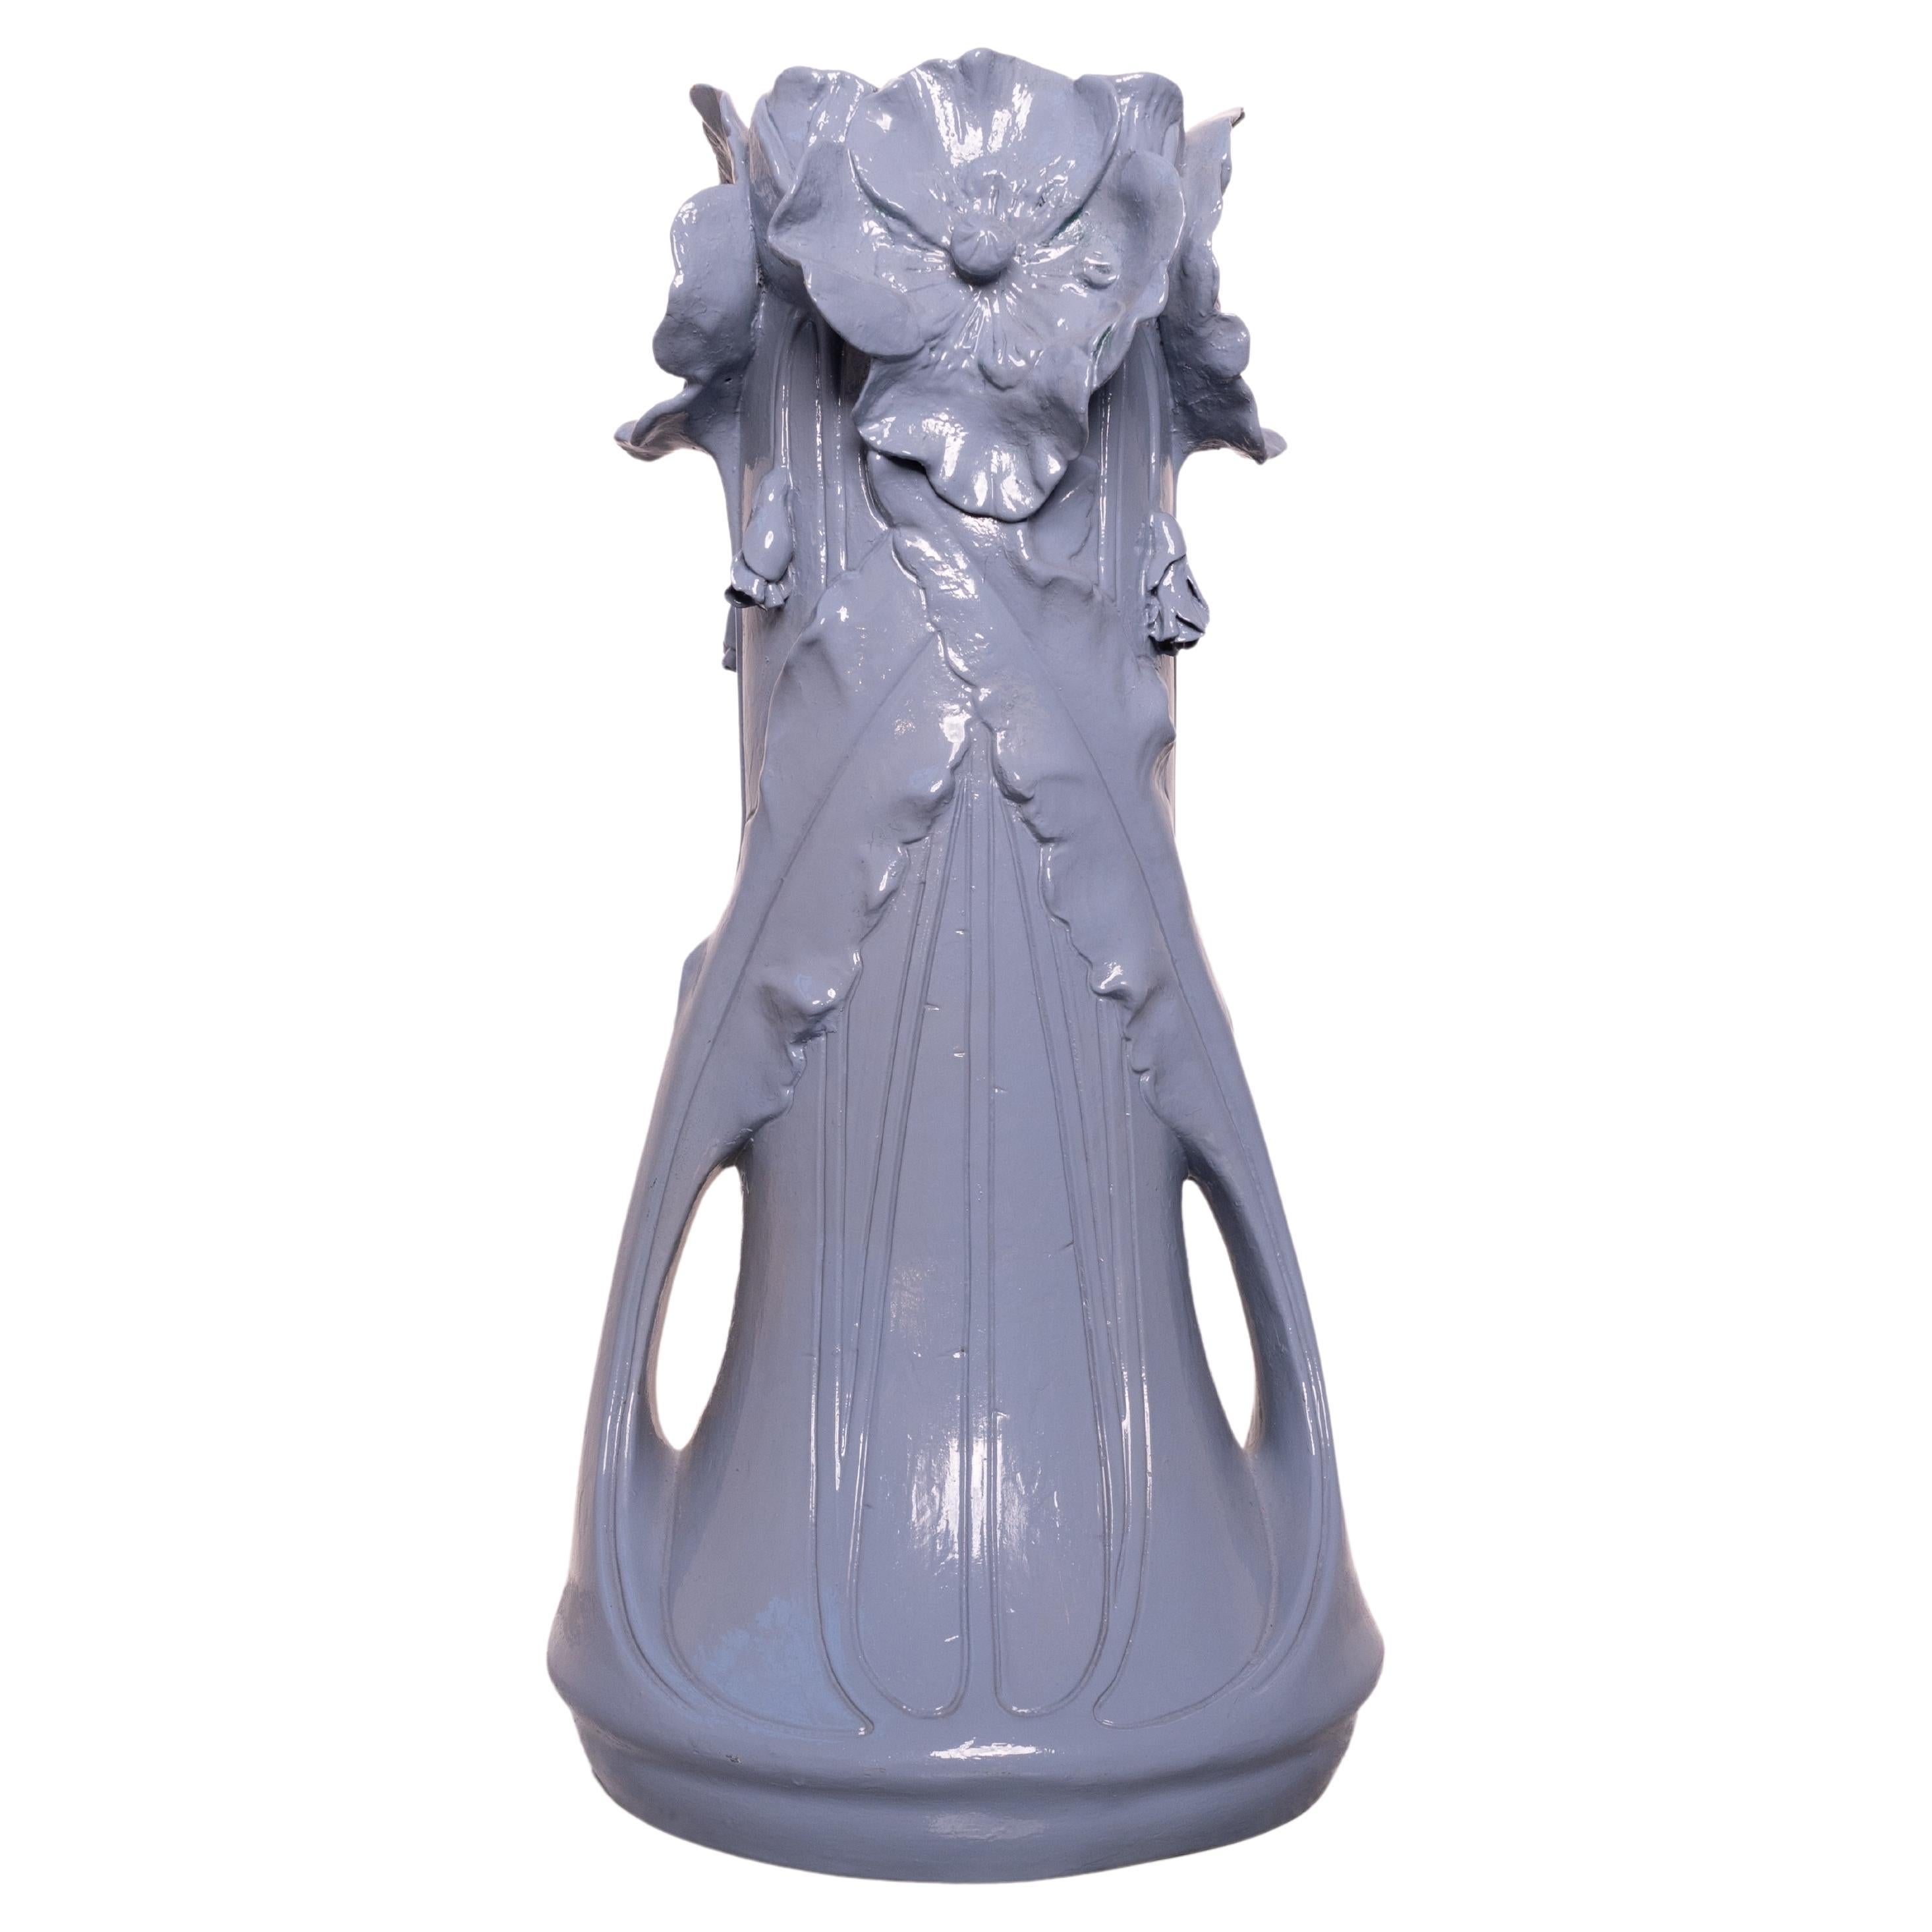 X-Large Jugendstil ceramic vase by Julius Dressler (late 19th – early 20th cent) For Sale